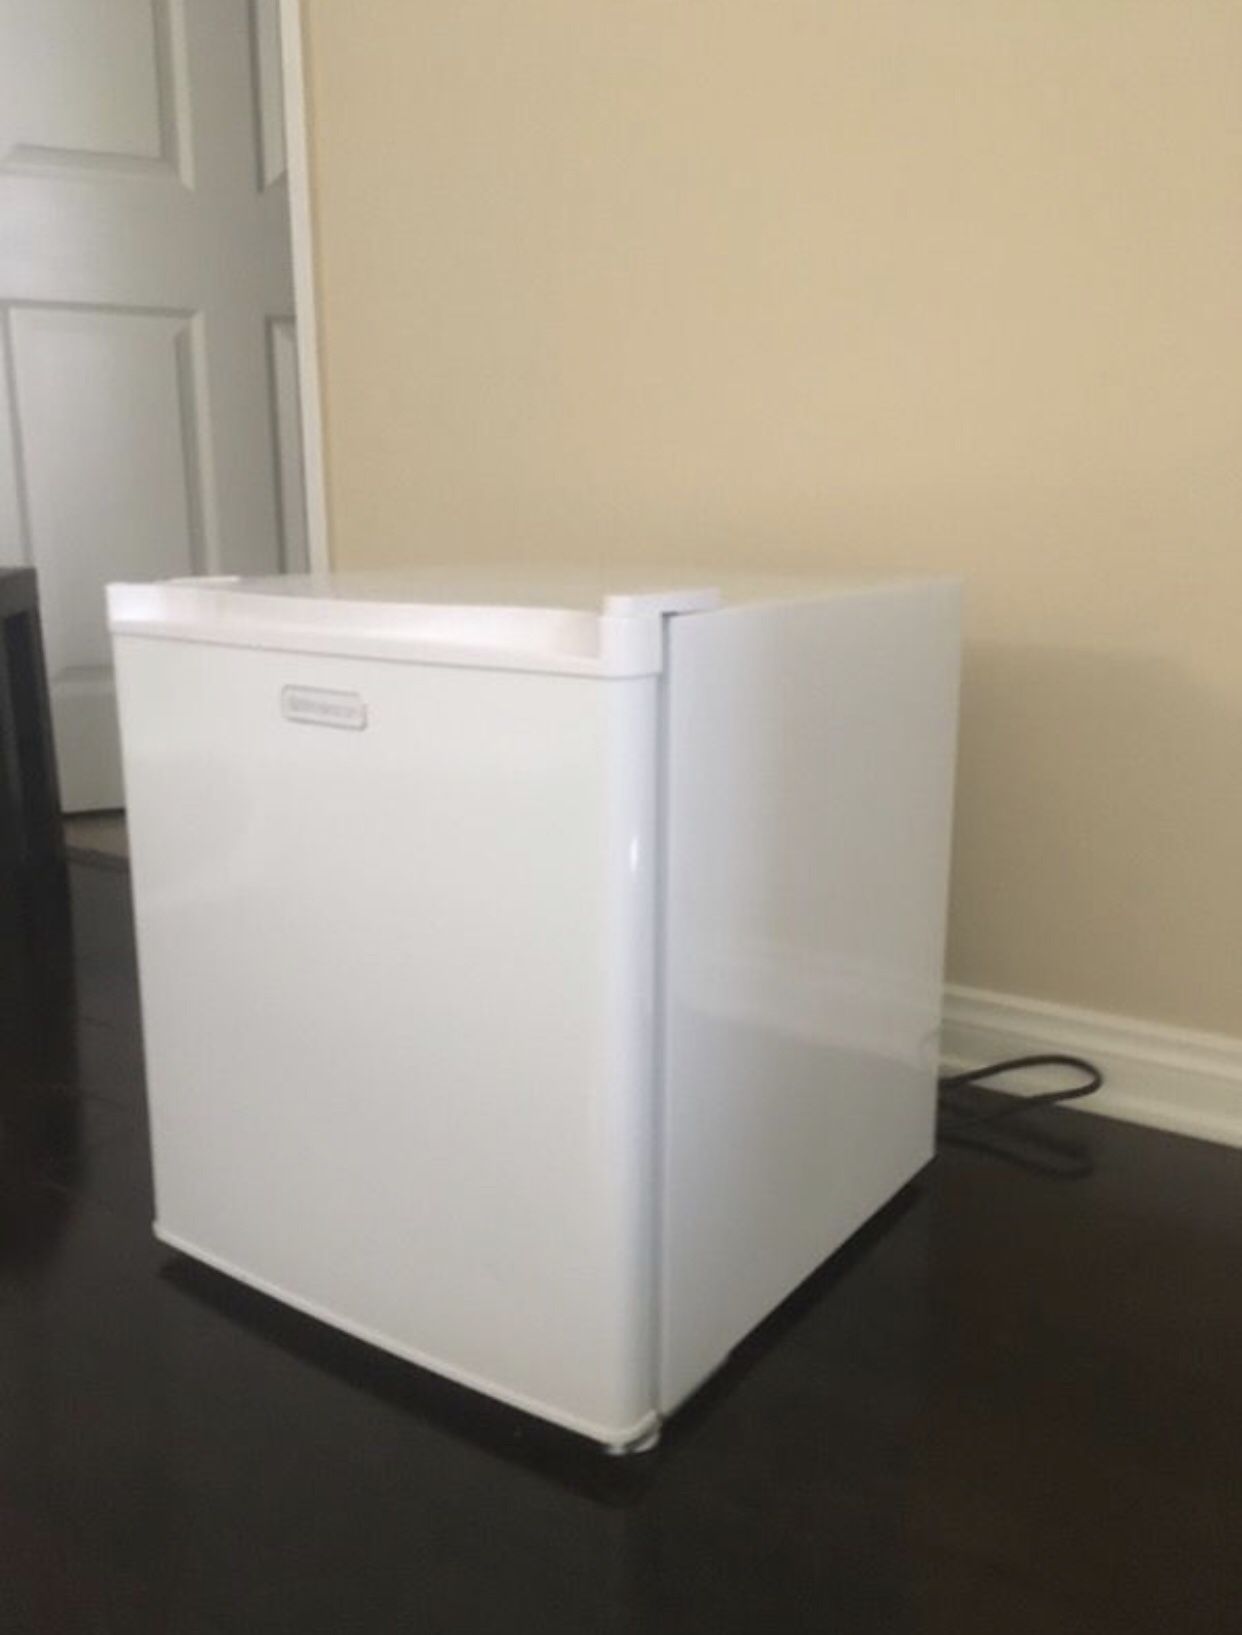 White mini fridge